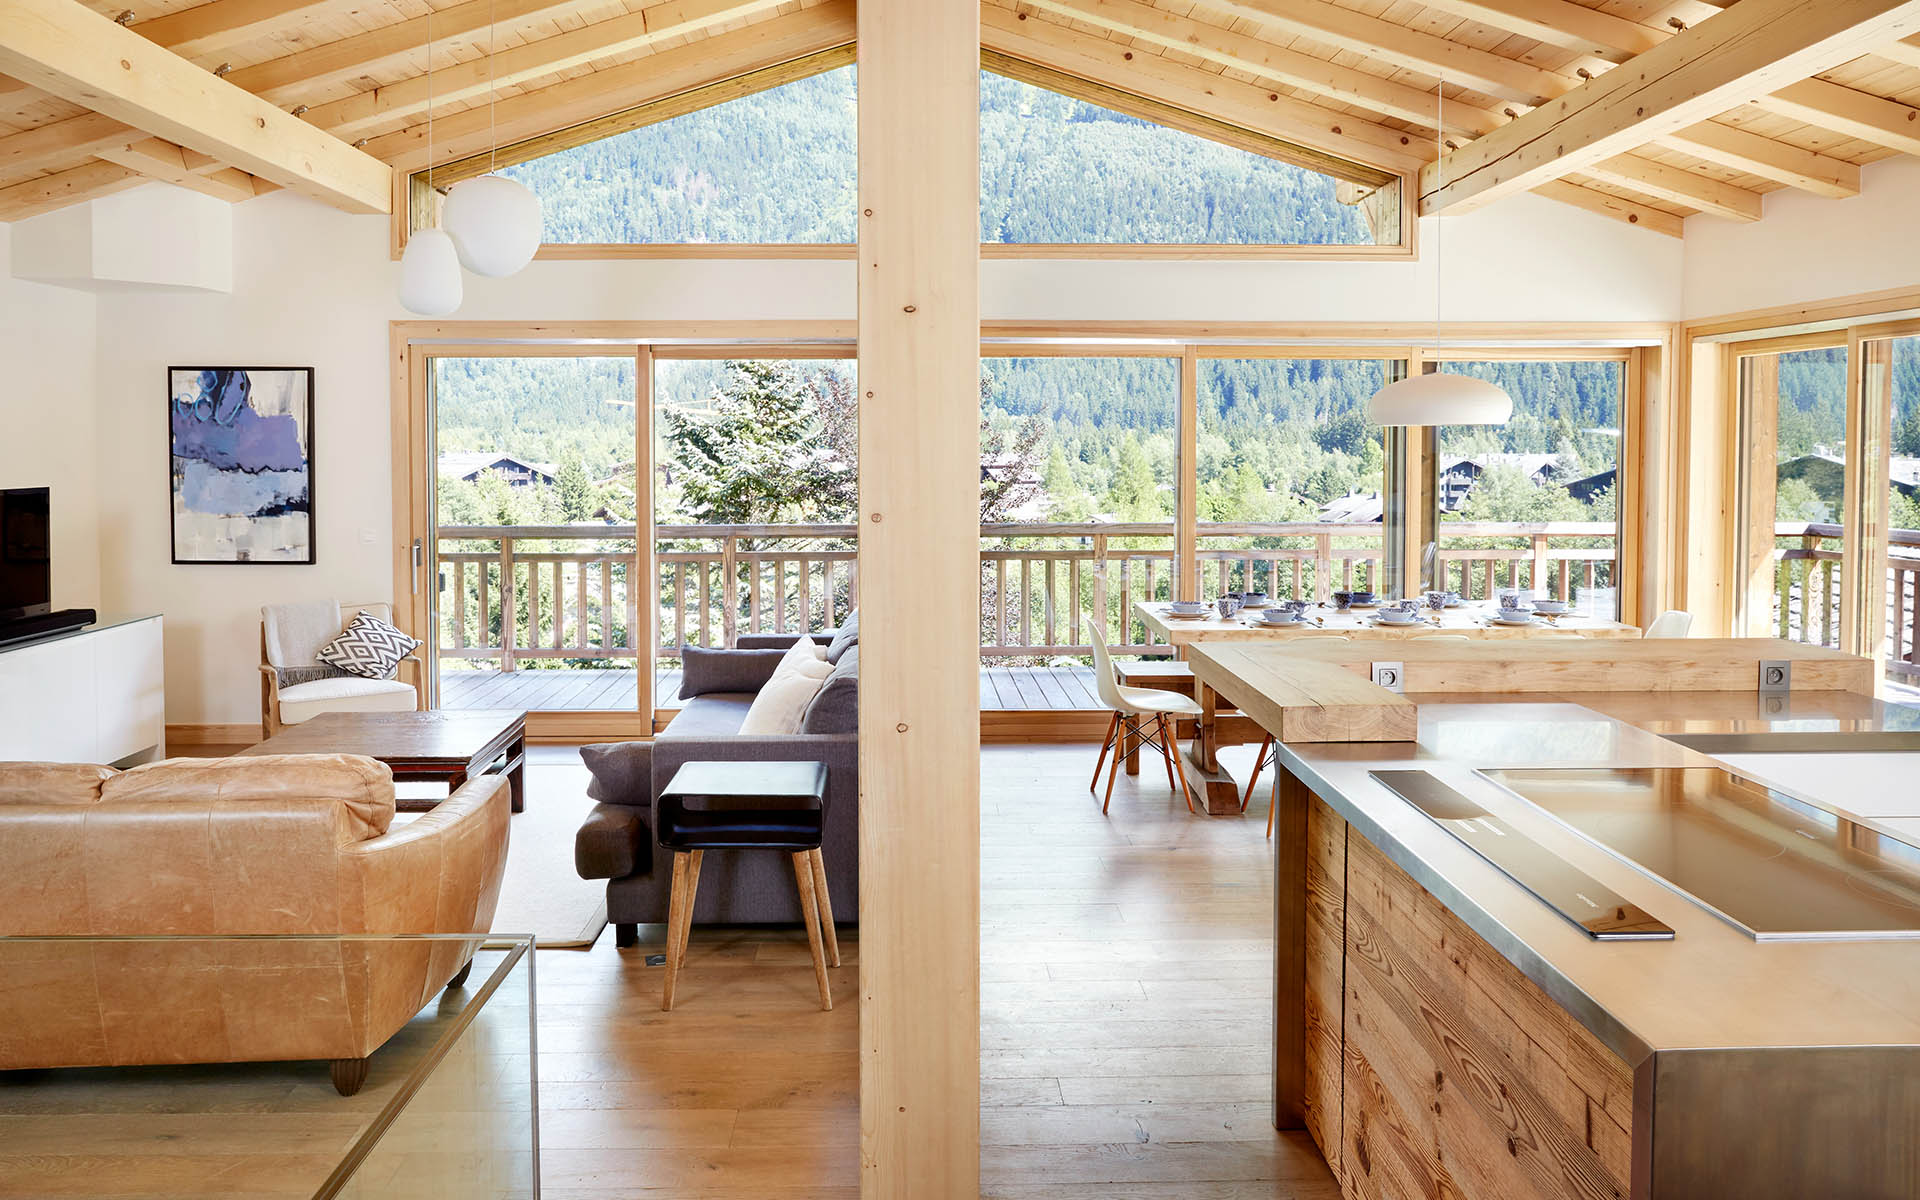 The Eco Lodge, Chamonix